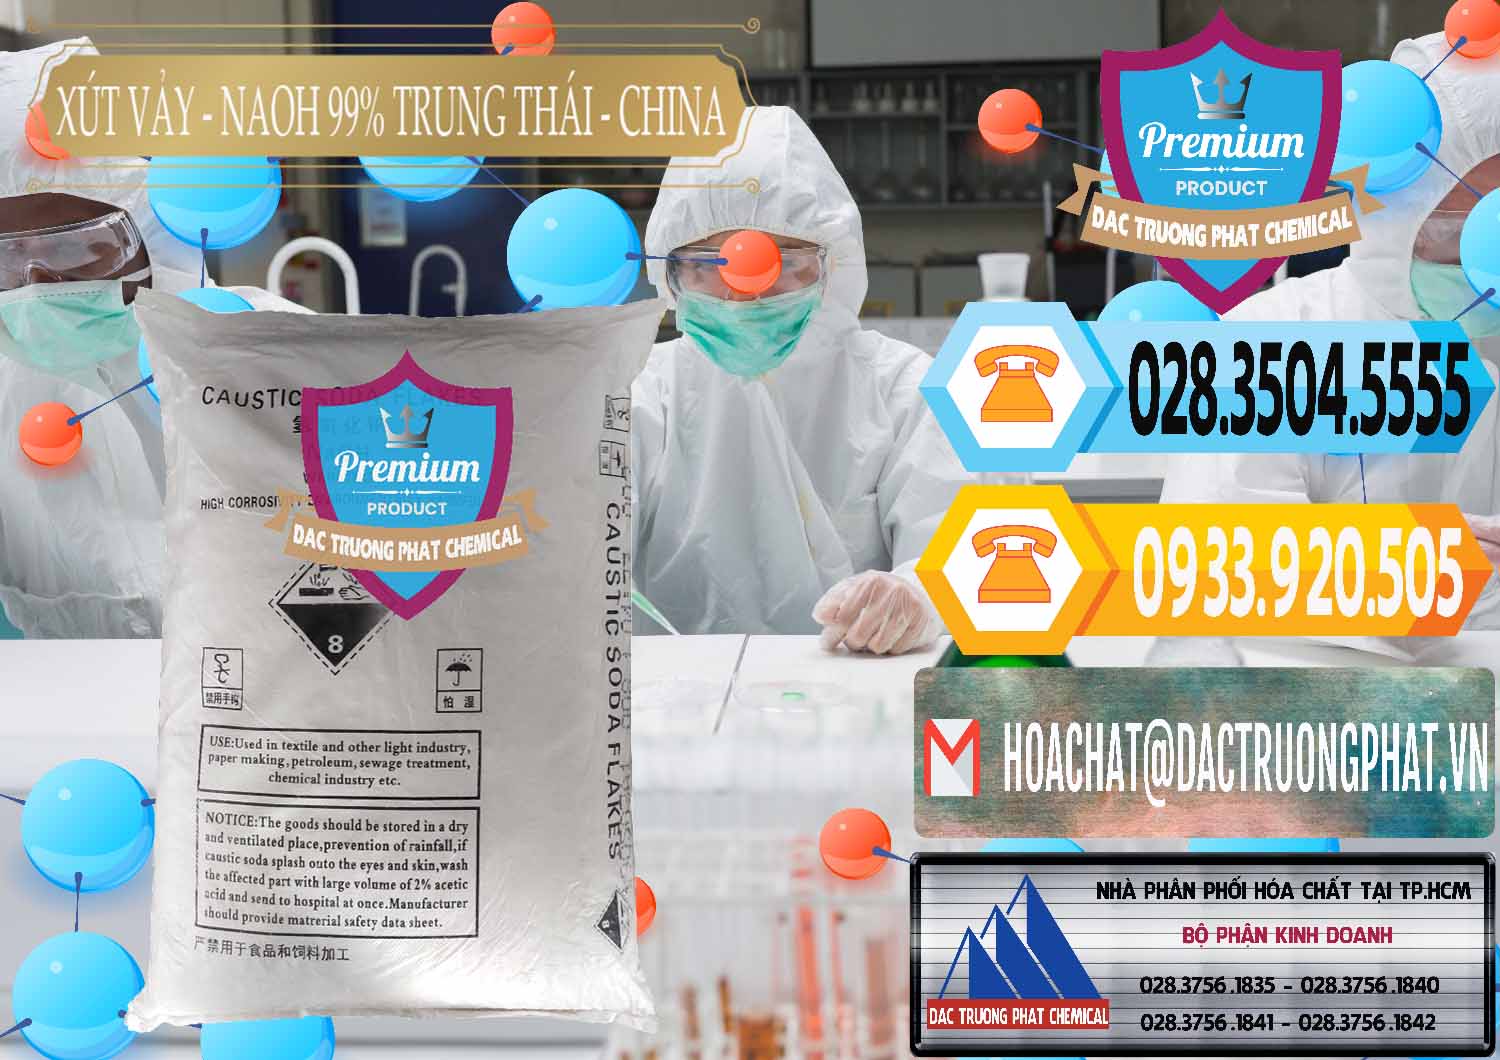 Chuyên bán - phân phối Xút Vảy - NaOH Vảy 99% Trung Thái China Trung Quốc - 0176 - Đơn vị cung cấp & phân phối hóa chất tại TP.HCM - hoachattayrua.net